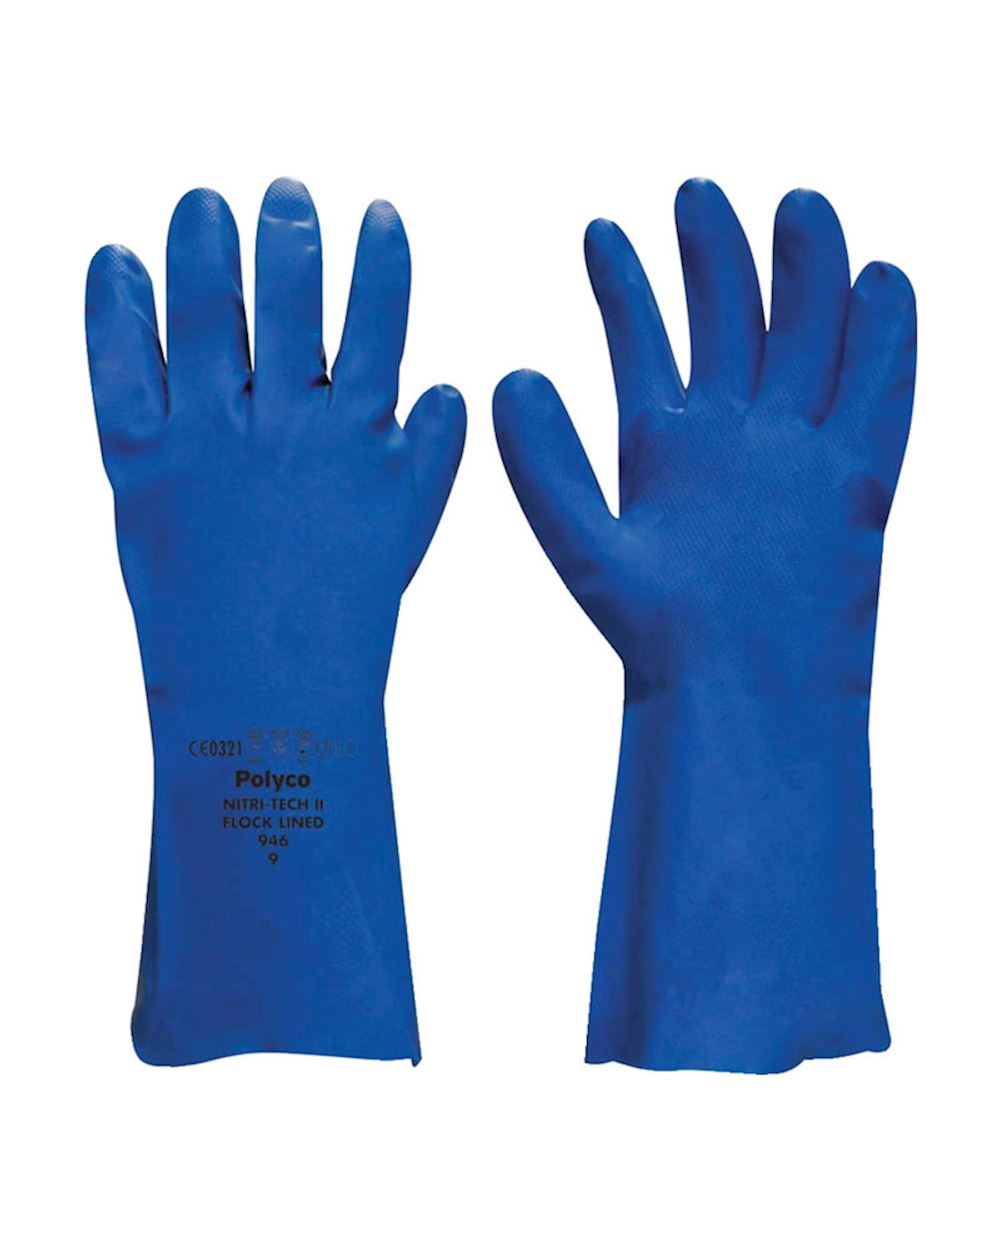 Polyco 925 Nitri Tech III químicos resistente guantes tamaño 8/tamaño mediano par único verde 